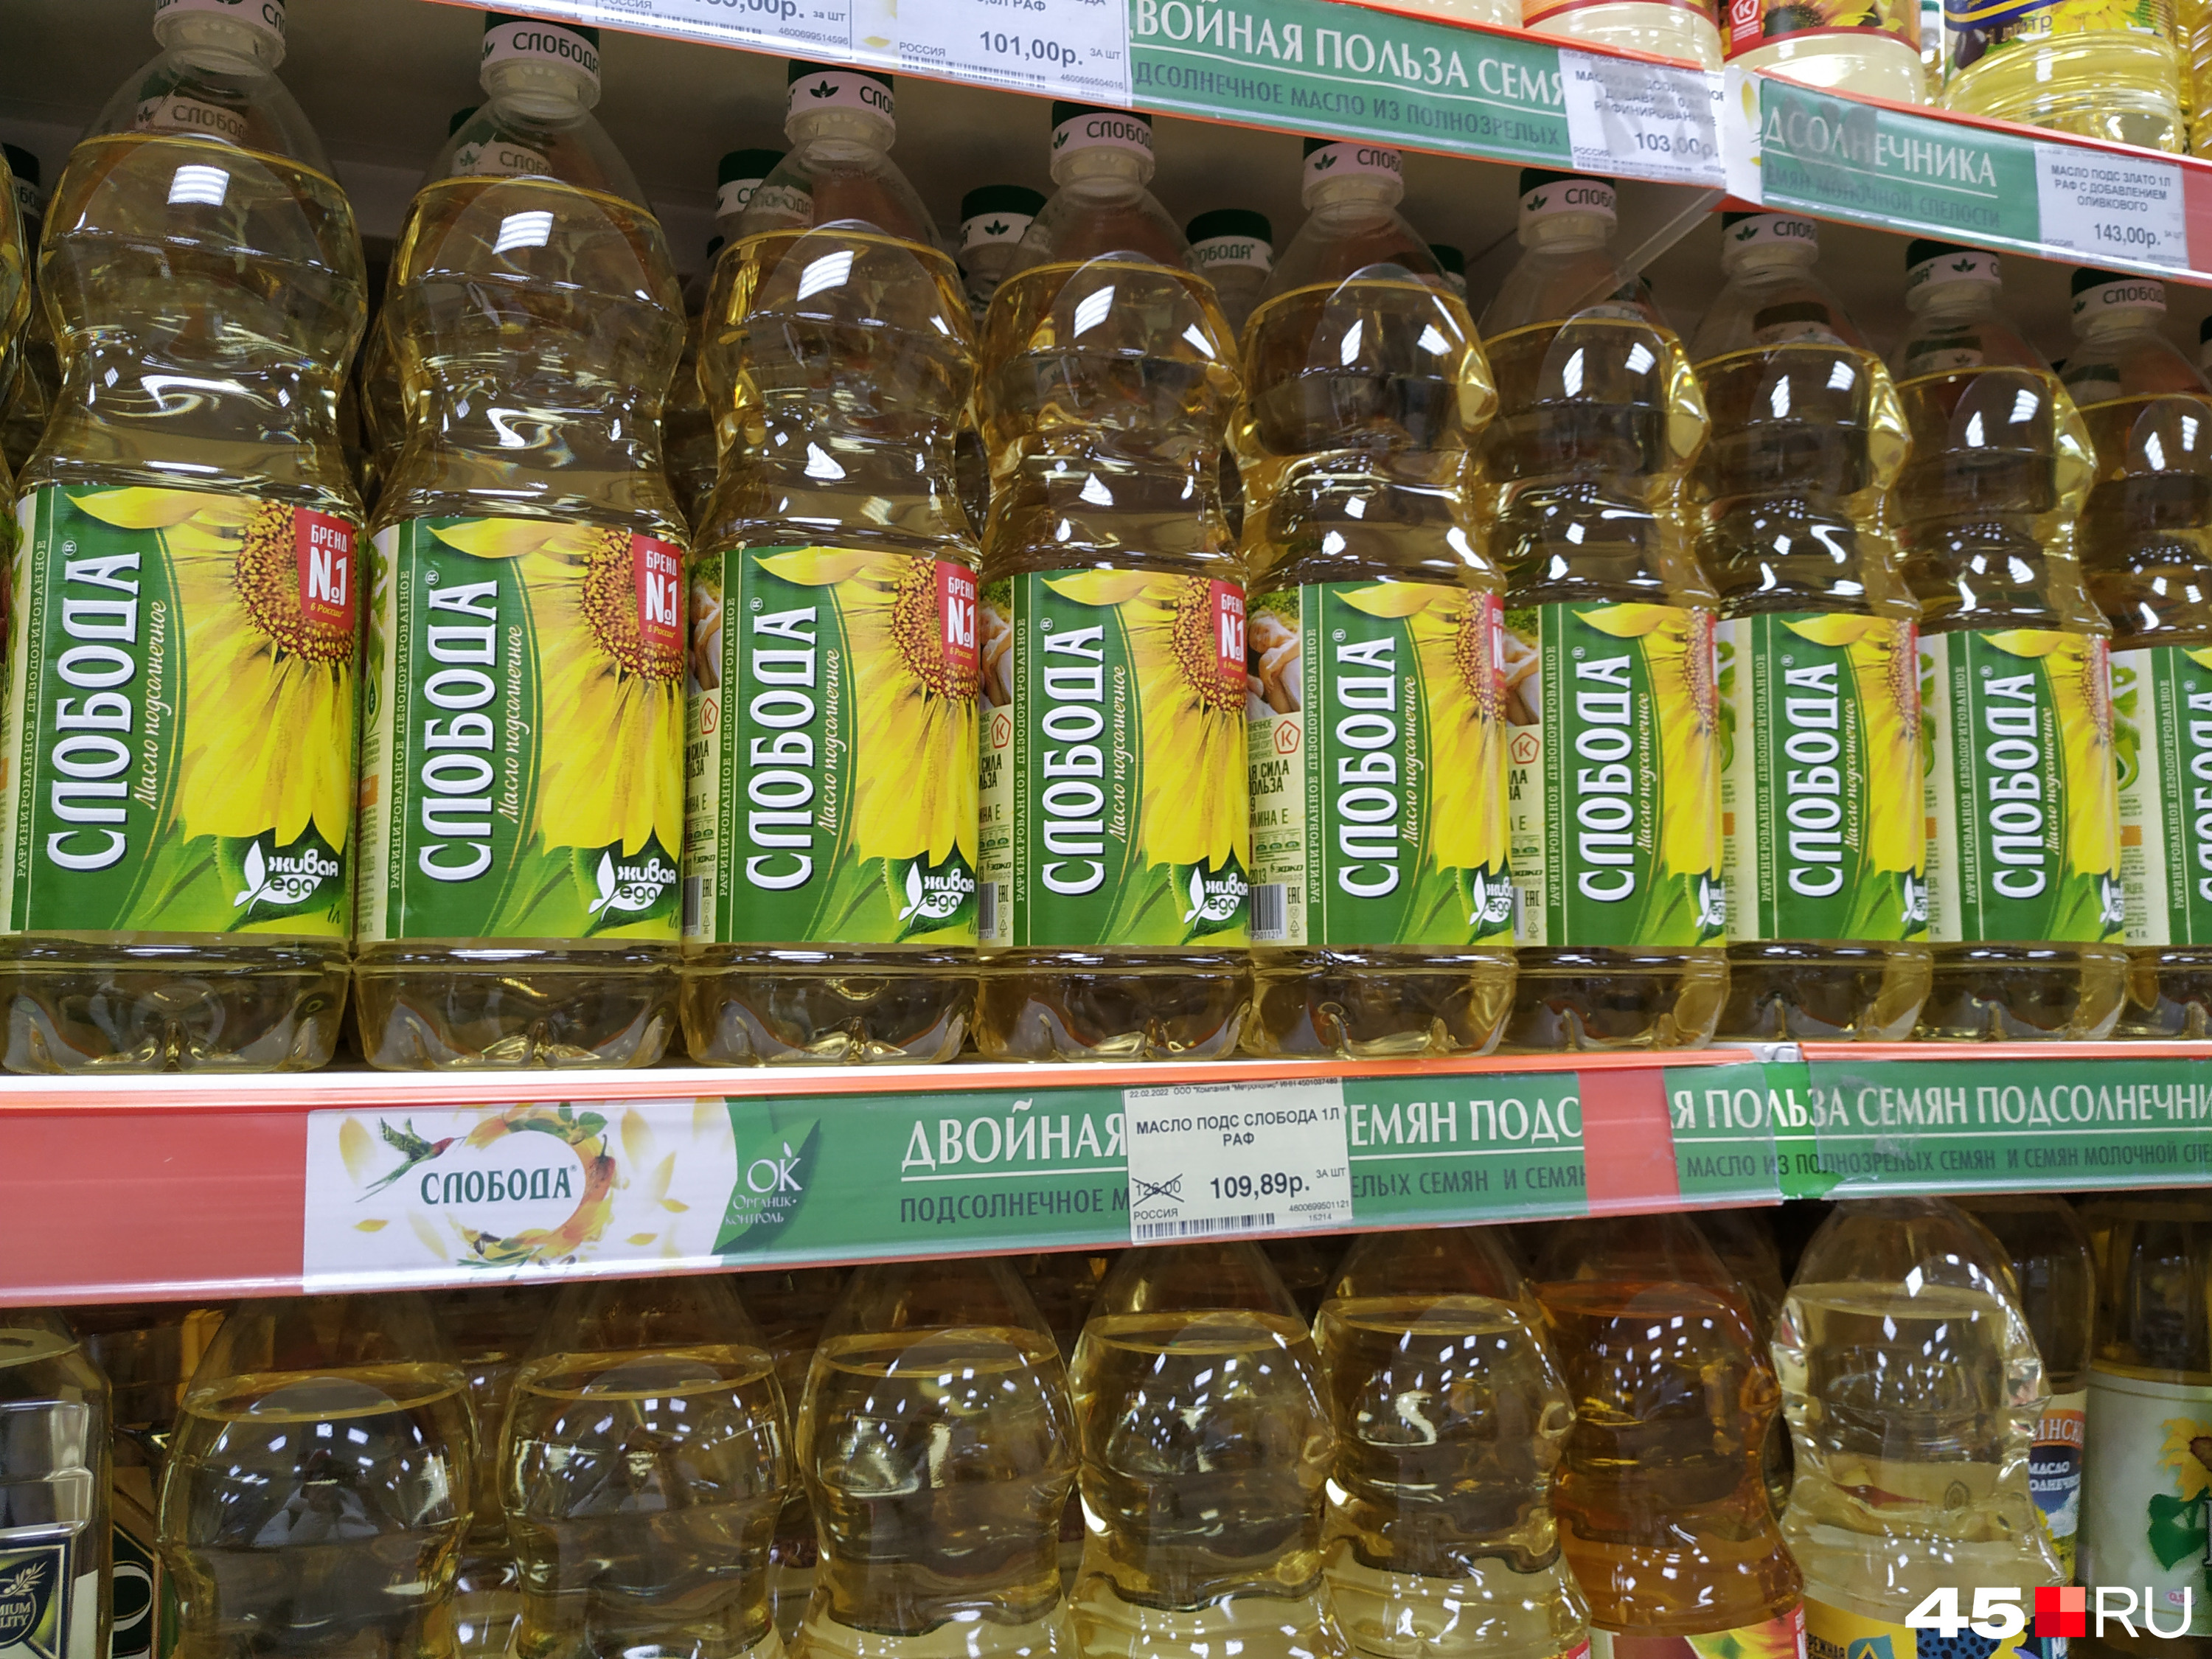 Масло подсолнечное «Слобода» в феврале продавали в бутылке объемом <nobr class="_">1 литр</nobr> за 109,89 рубля